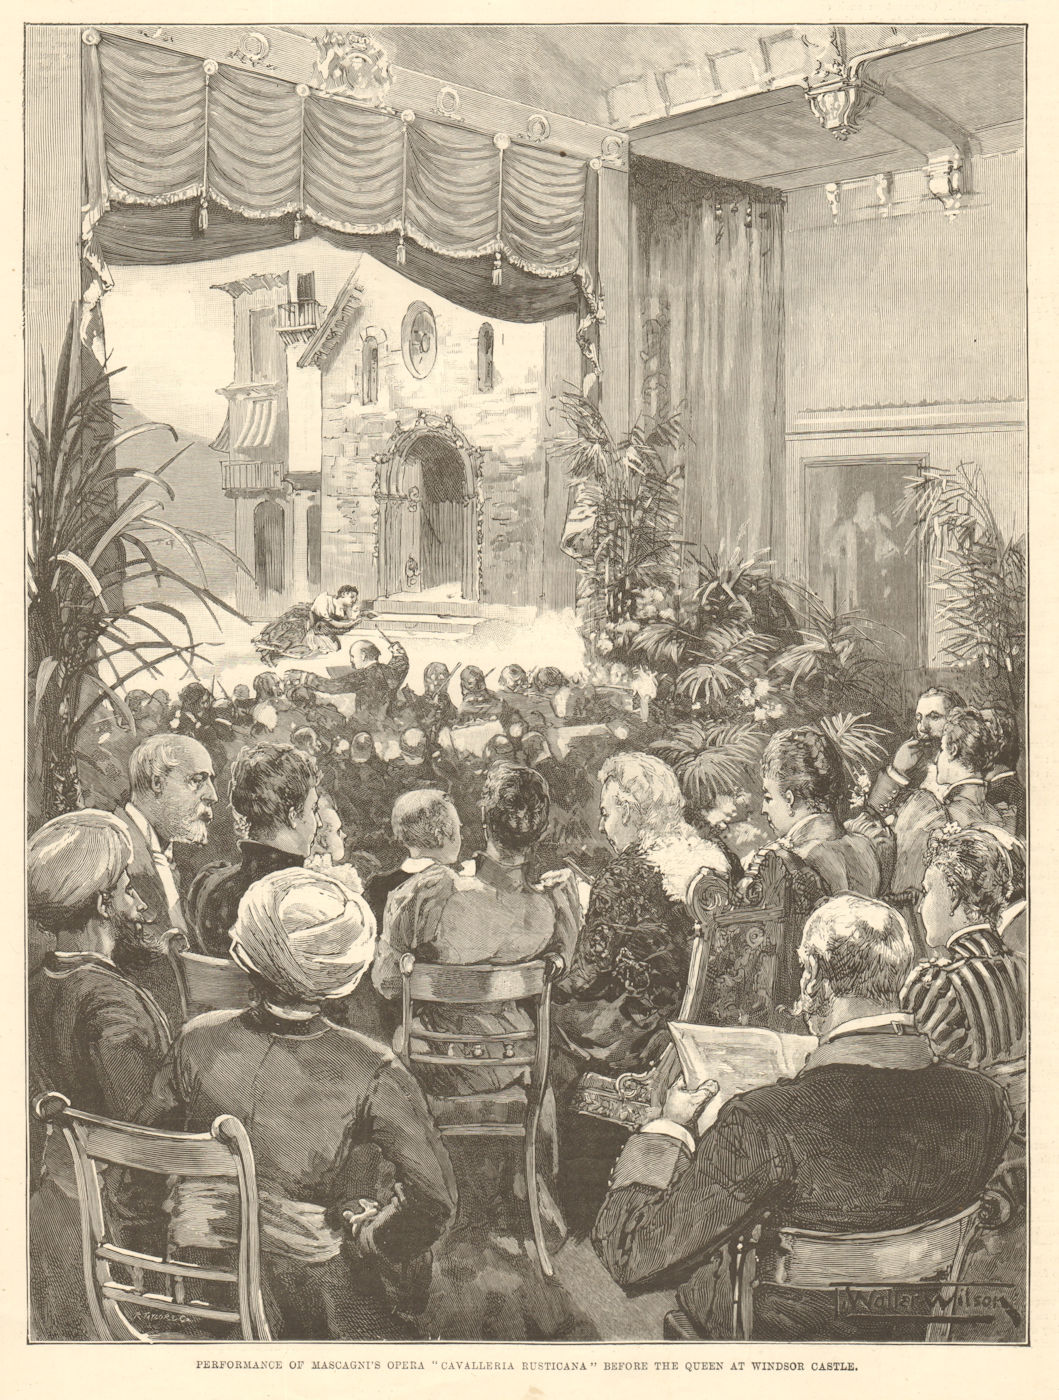 Mascagni's opera "Cavalleria rusticana", for Queen Victoria, Windsor Castle 1891